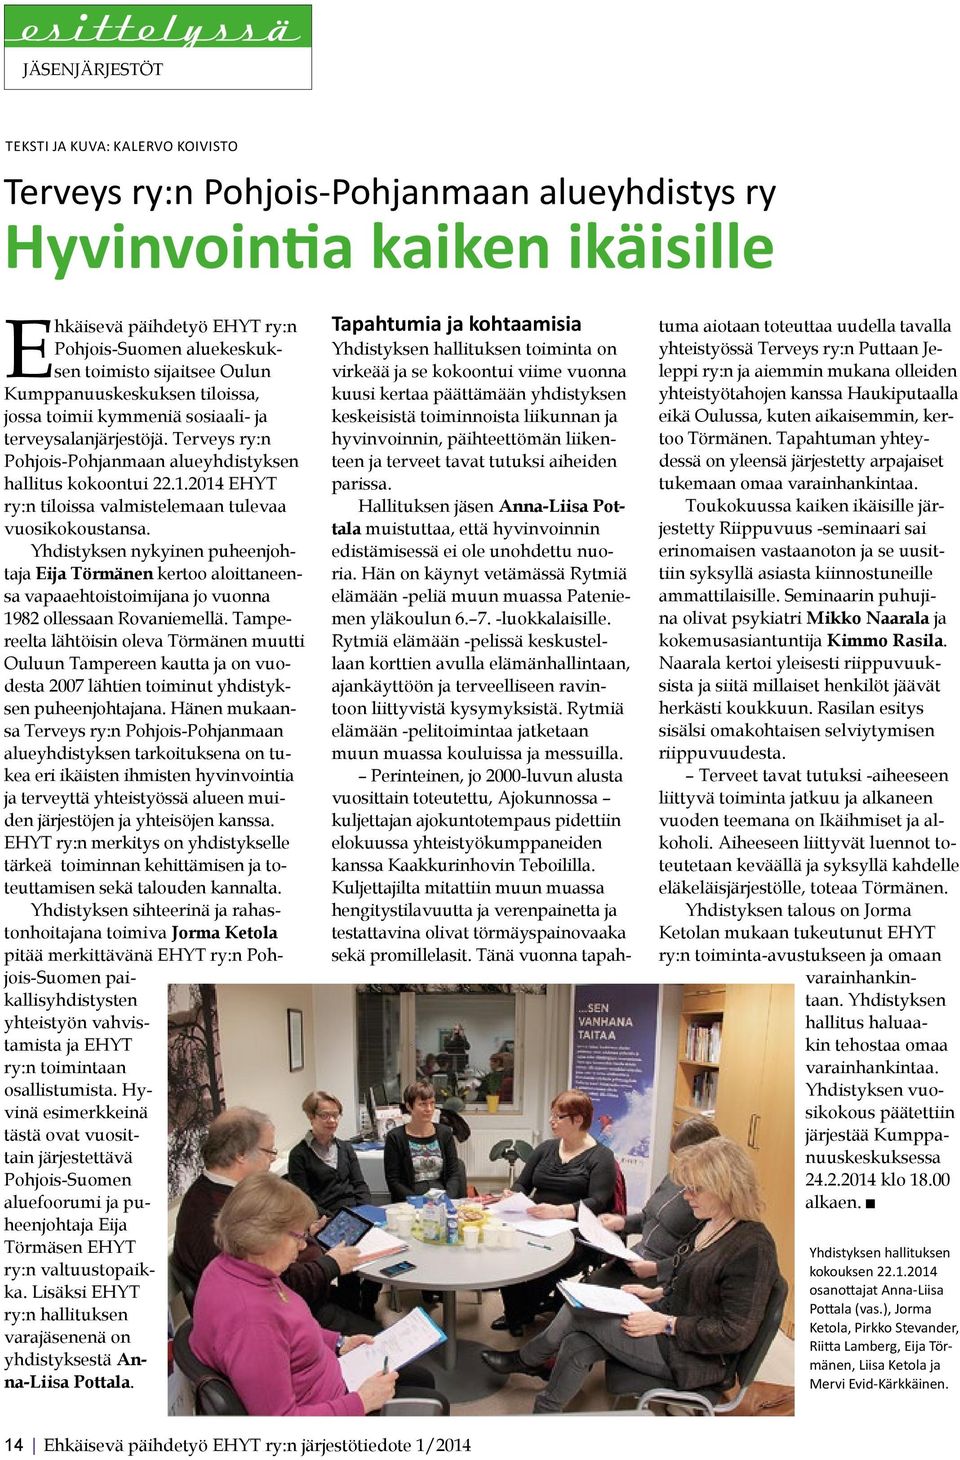 2014 EHYT ry:n tiloissa valmistelemaan tulevaa vuosikokoustansa. Yhdistyksen nykyinen puheenjohtaja Eija Törmänen kertoo aloittaneensa vapaaehtoistoimijana jo vuonna 1982 ollessaan Rovaniemellä.